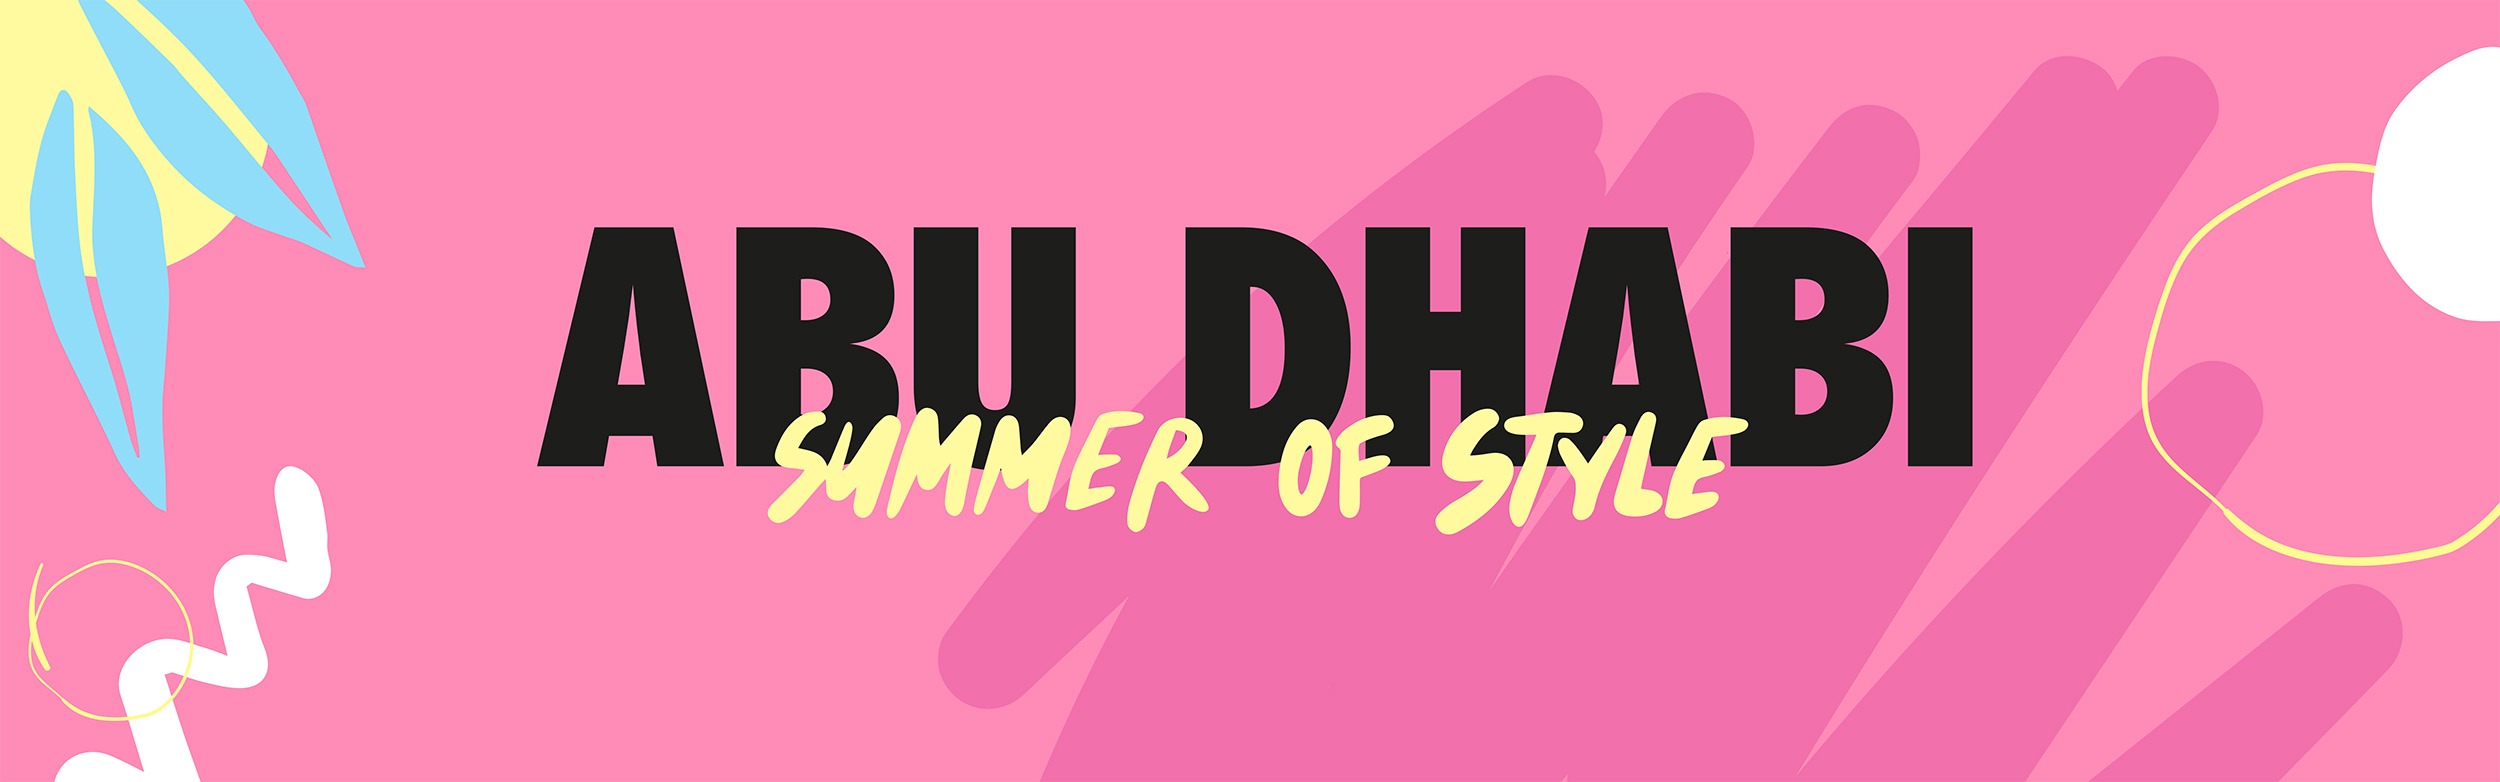 Abu Dhabi – Summer of Style - Coming Soon in UAE